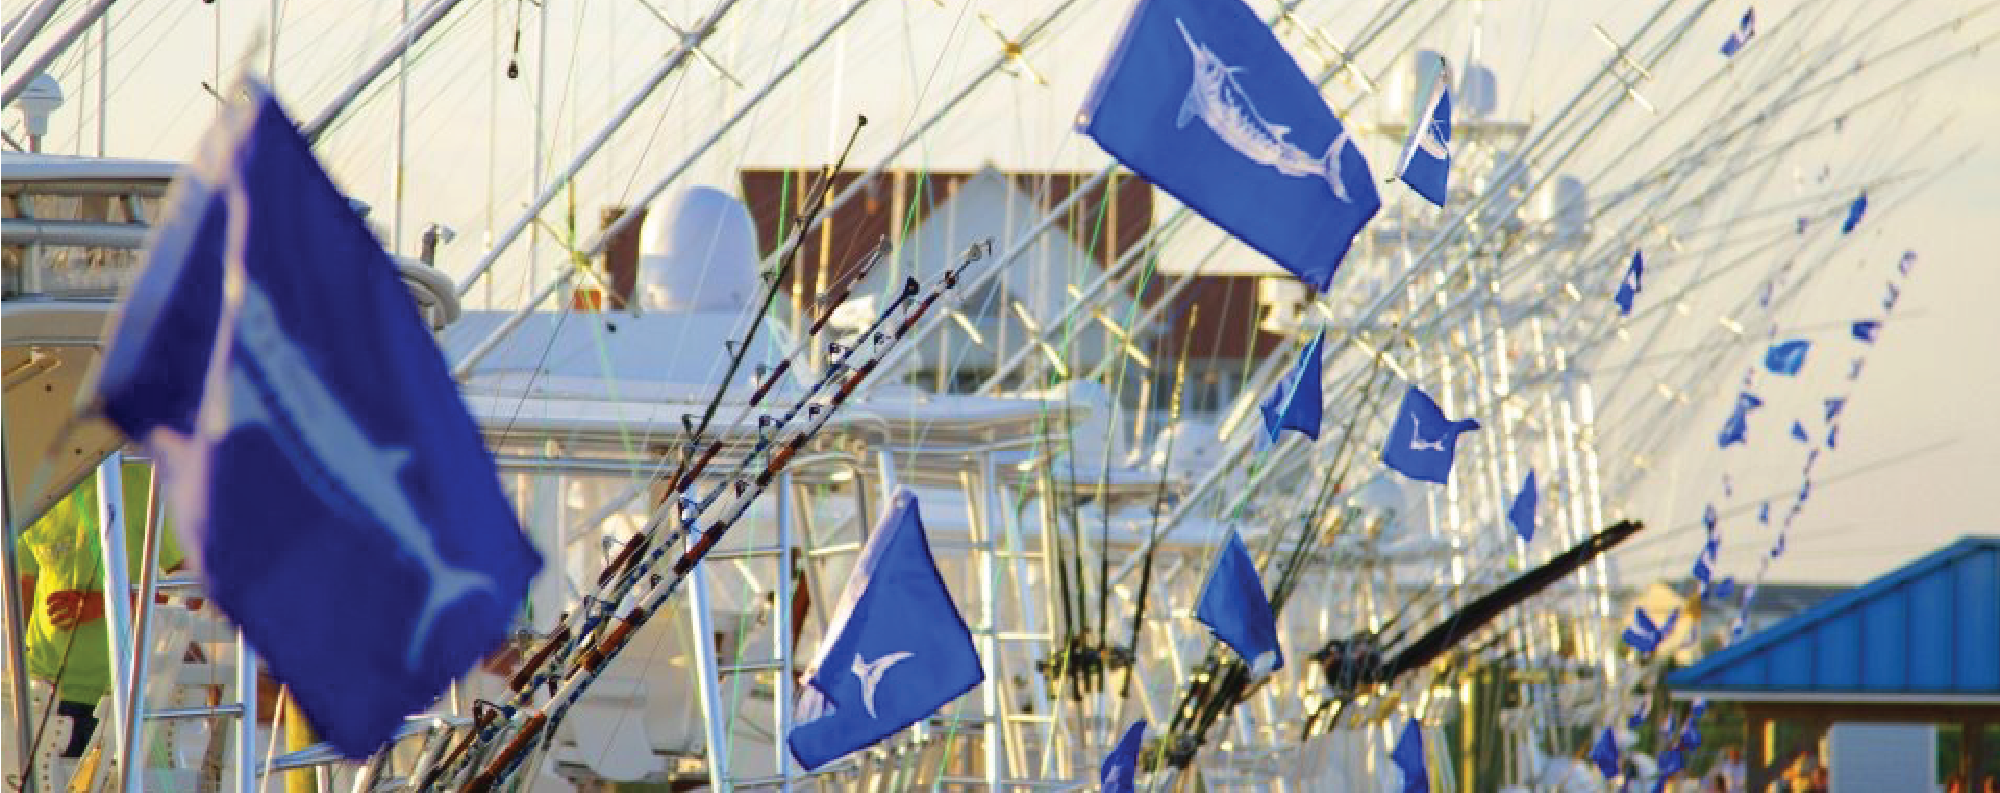 Fishing Boats Flying Marlin Flags